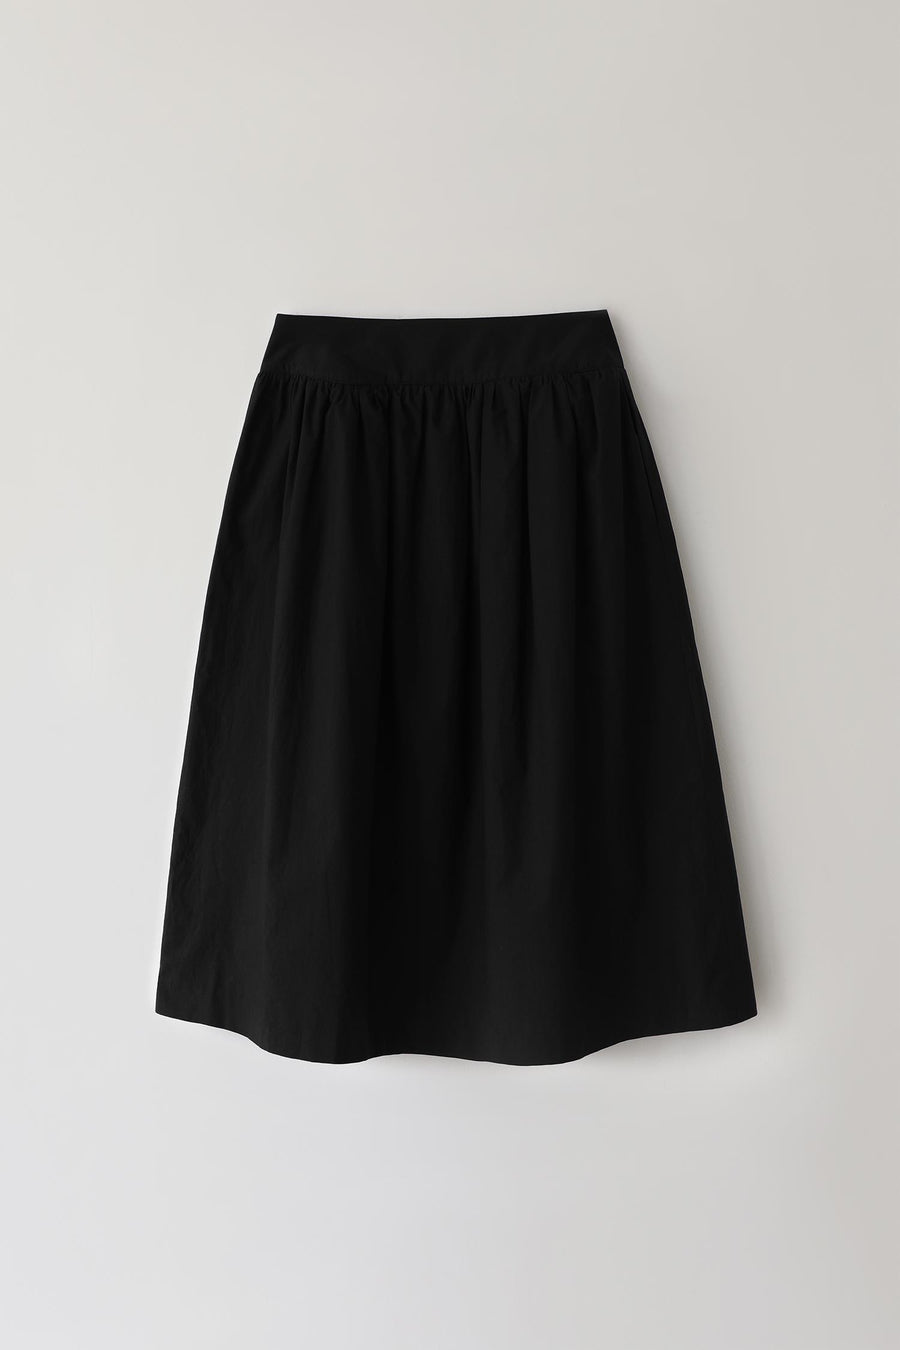 Sorne Flare Skirt